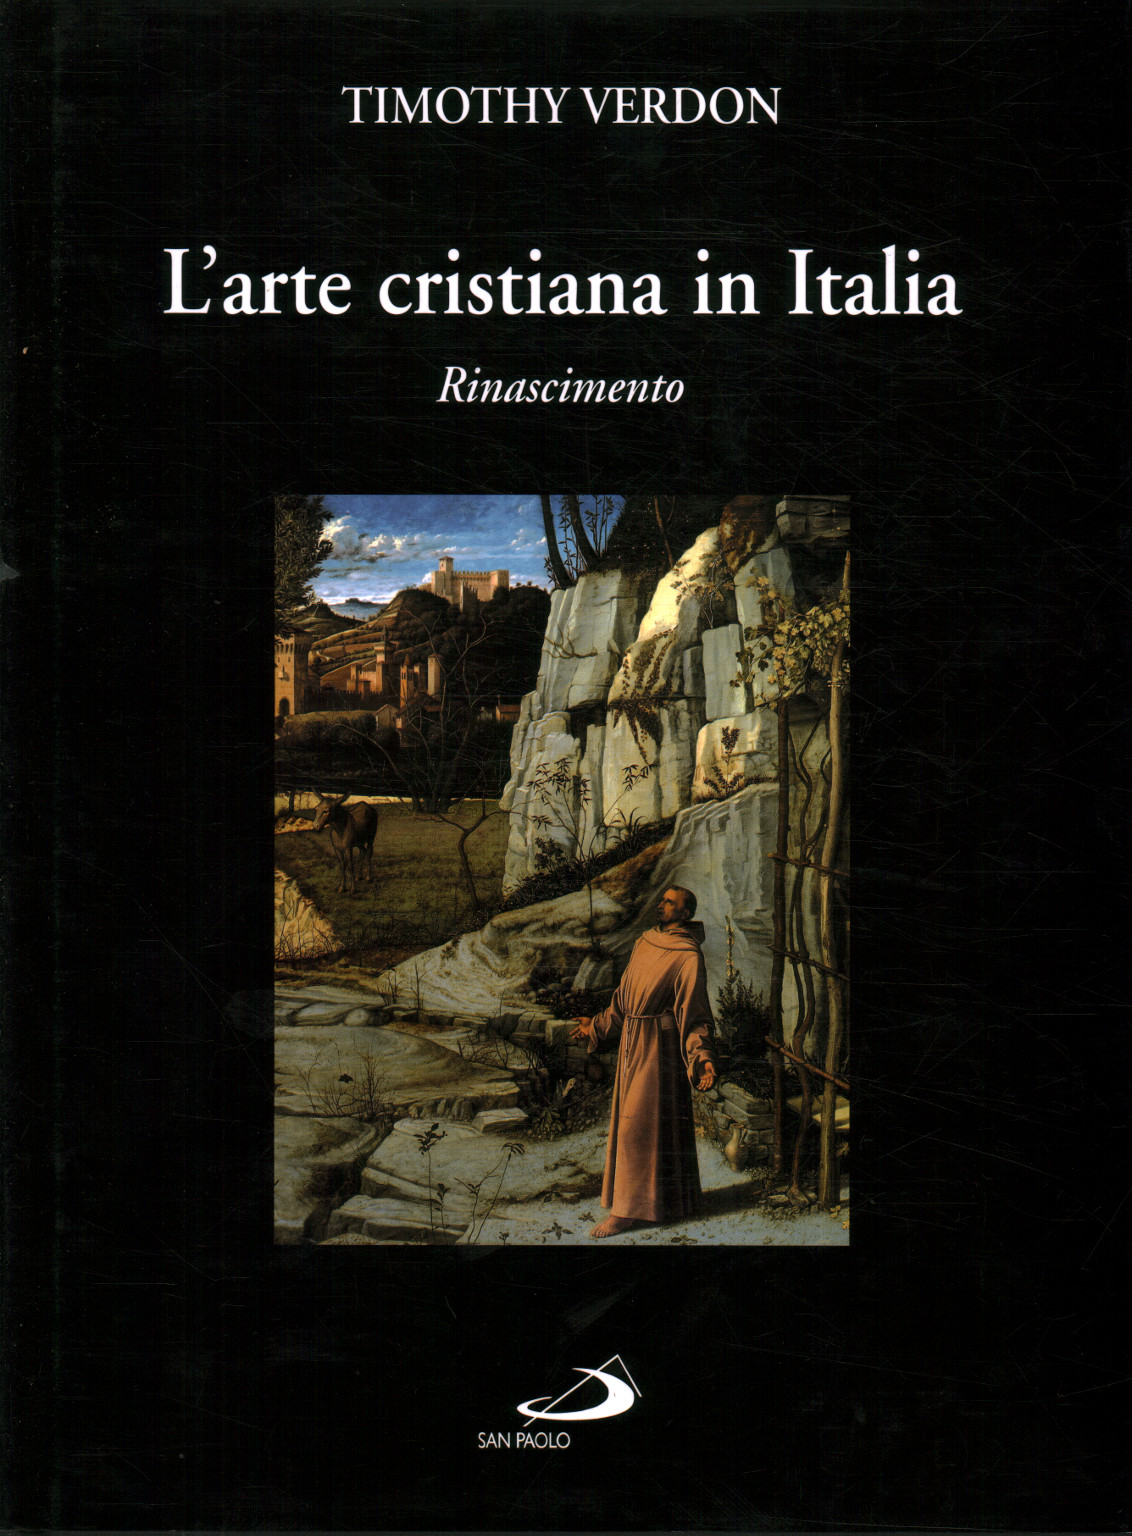 Arte cristiano en Italia (volumen 2), Timothy Verdon